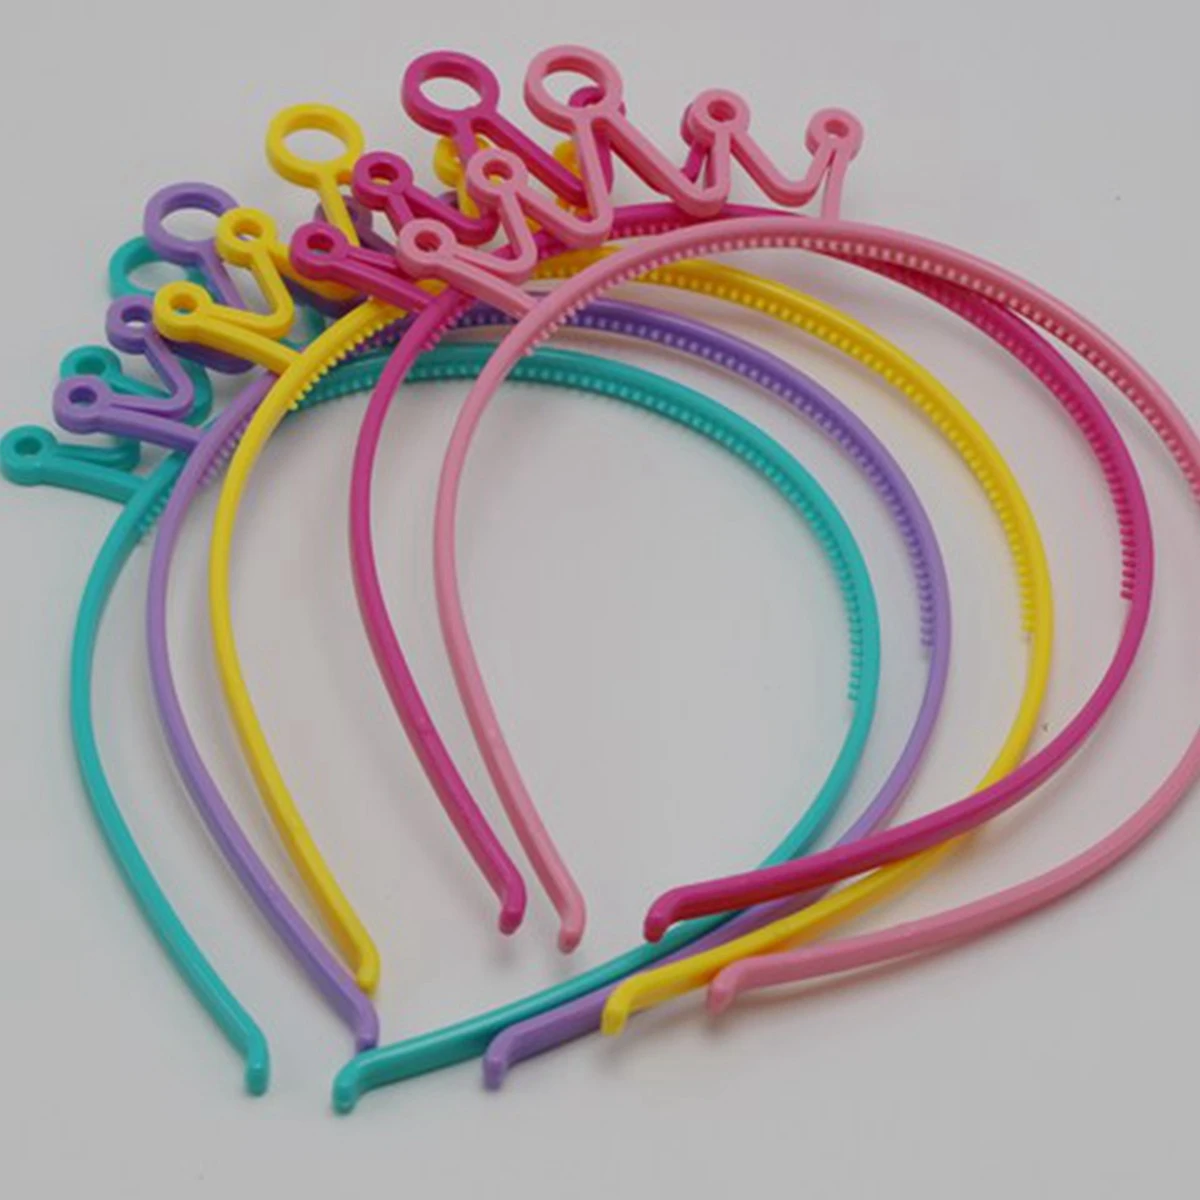 10 Mixed Color Plastic Crown Hair Tiara Princess Headband Hair band Party Favors